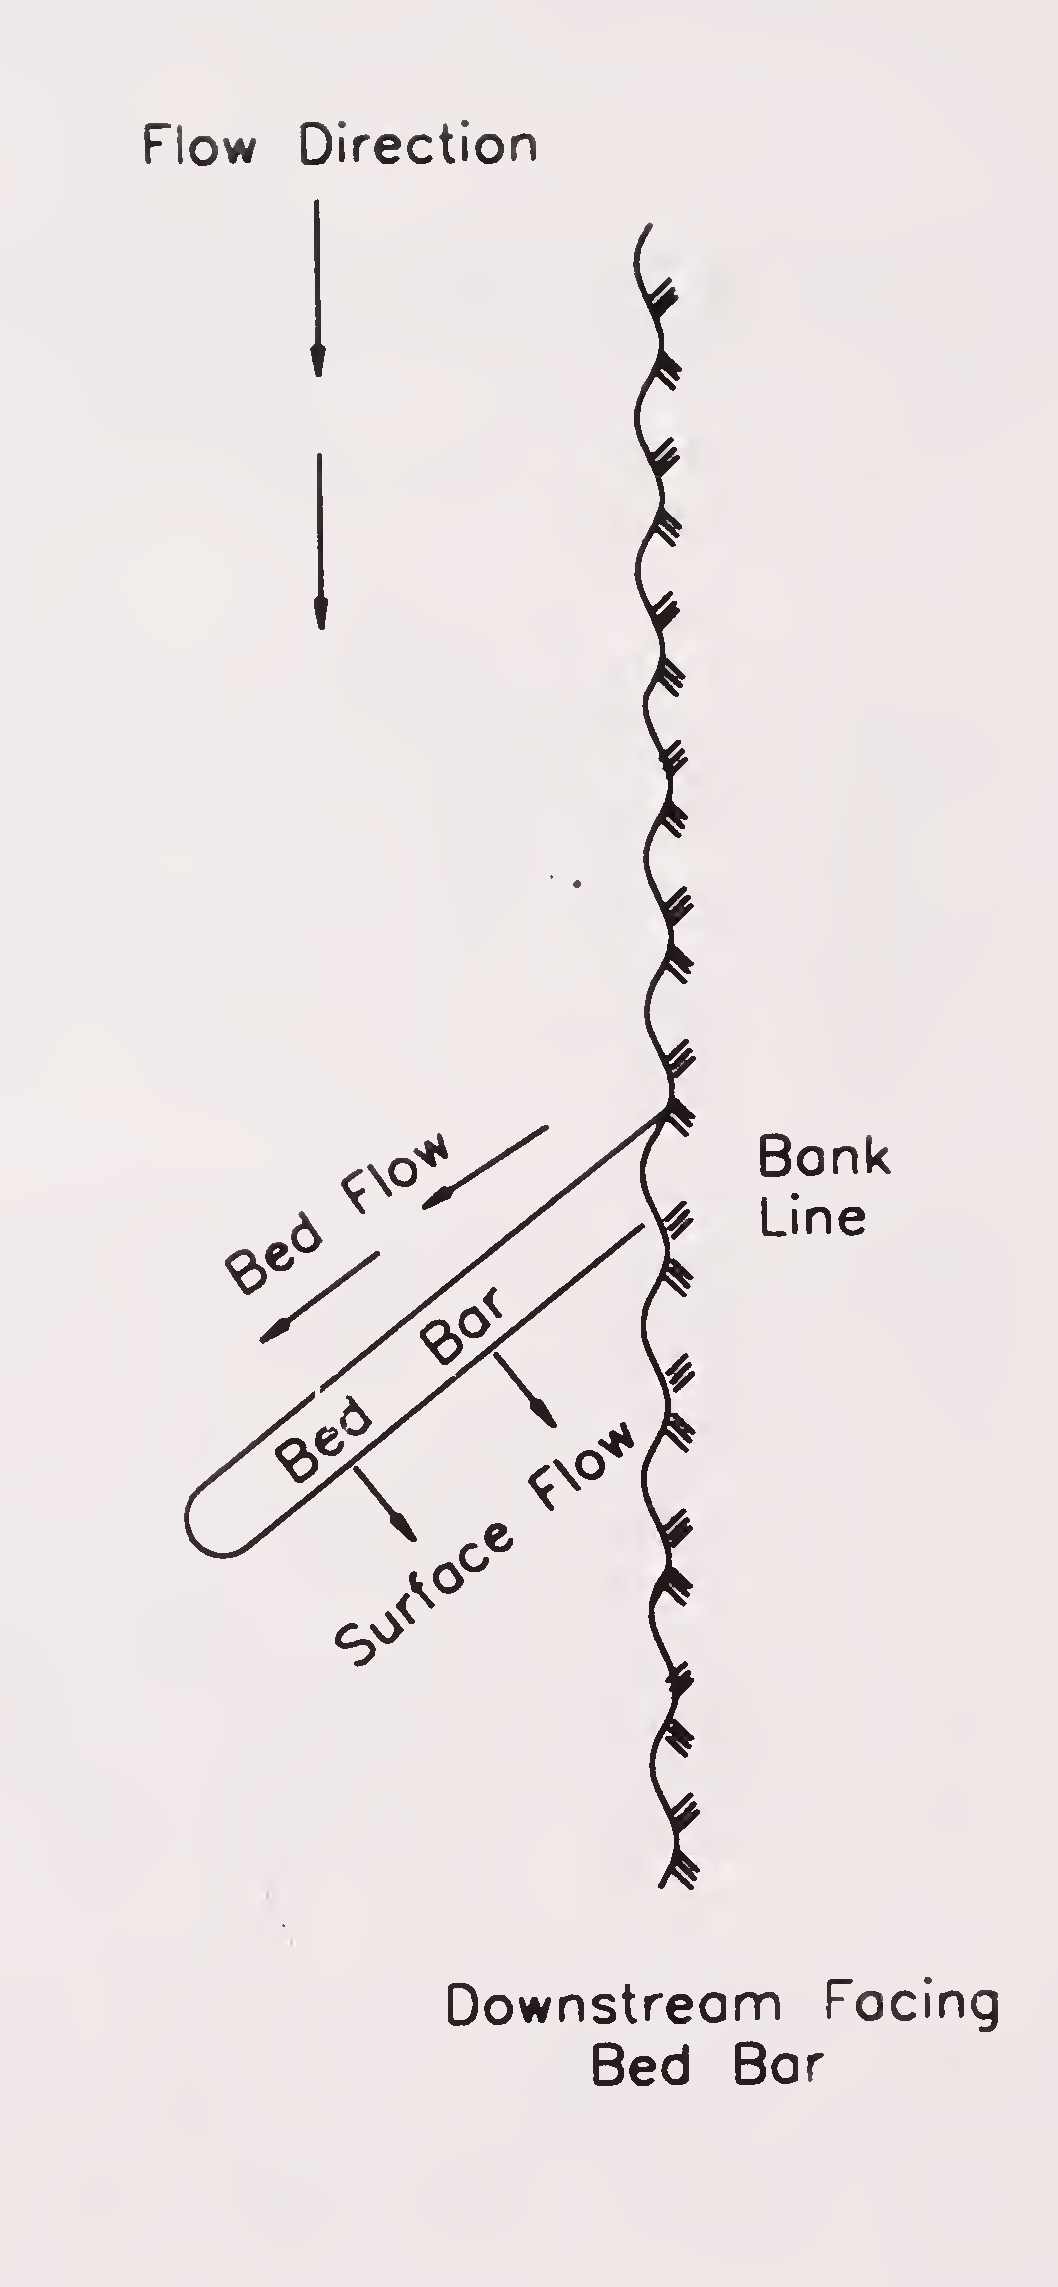 Fig. 7.2 (b): Downstream facing bed bar (Para 7.2.1.3.)